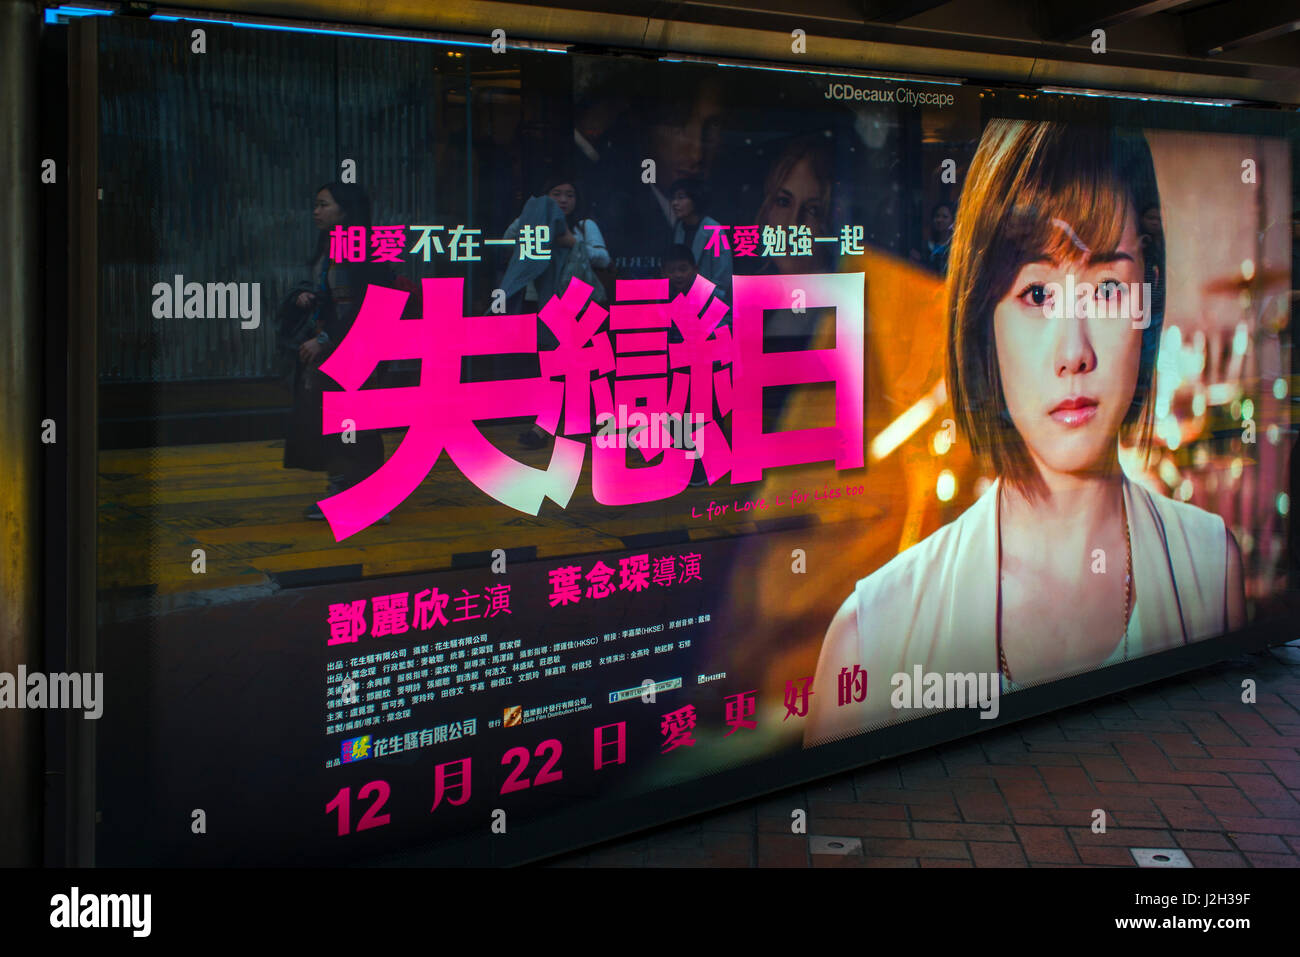 Affiche de film lumineux en chinois, Hong Kong Banque D'Images